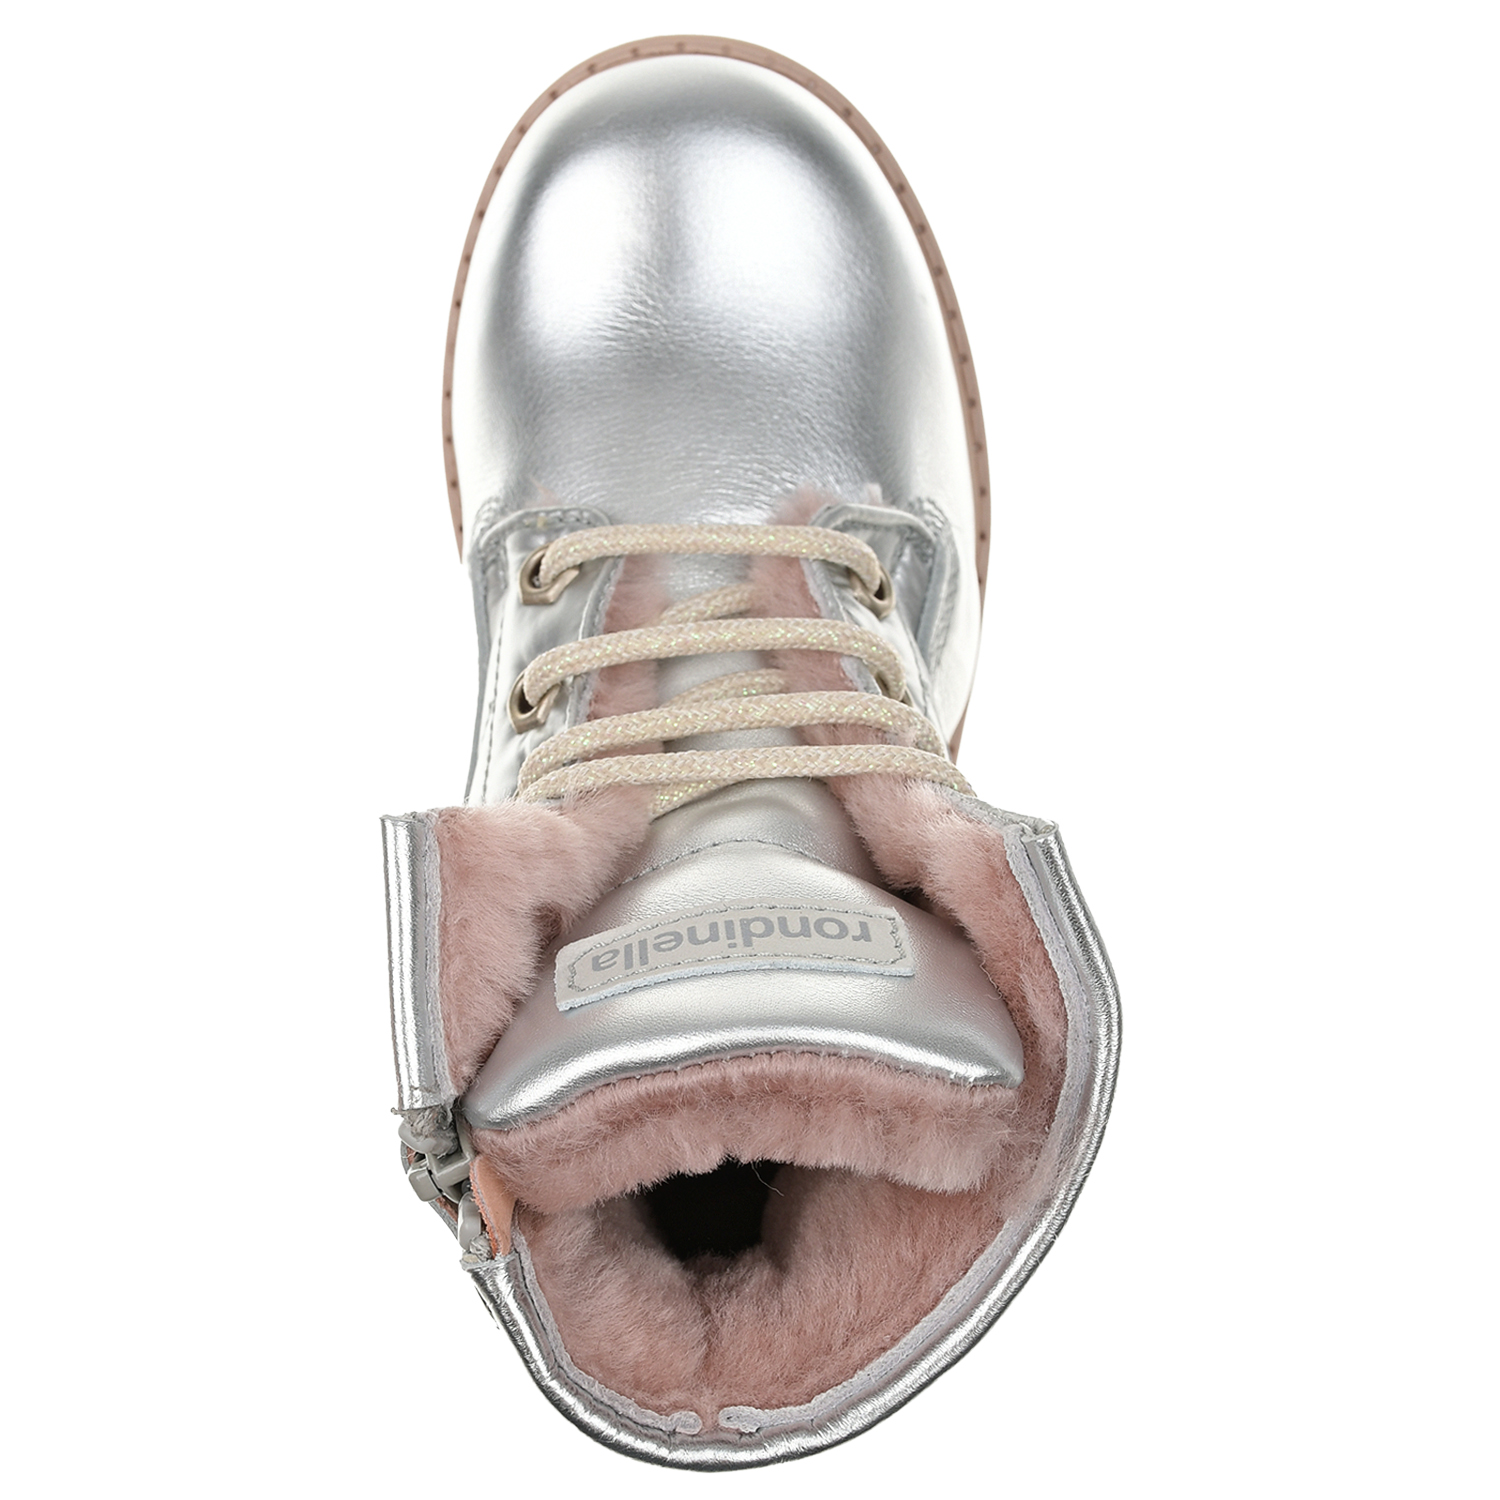 Ботинки из серебристой кожи с меховой подкладкой Rondinella детские, размер 26, цвет серебристый - фото 4